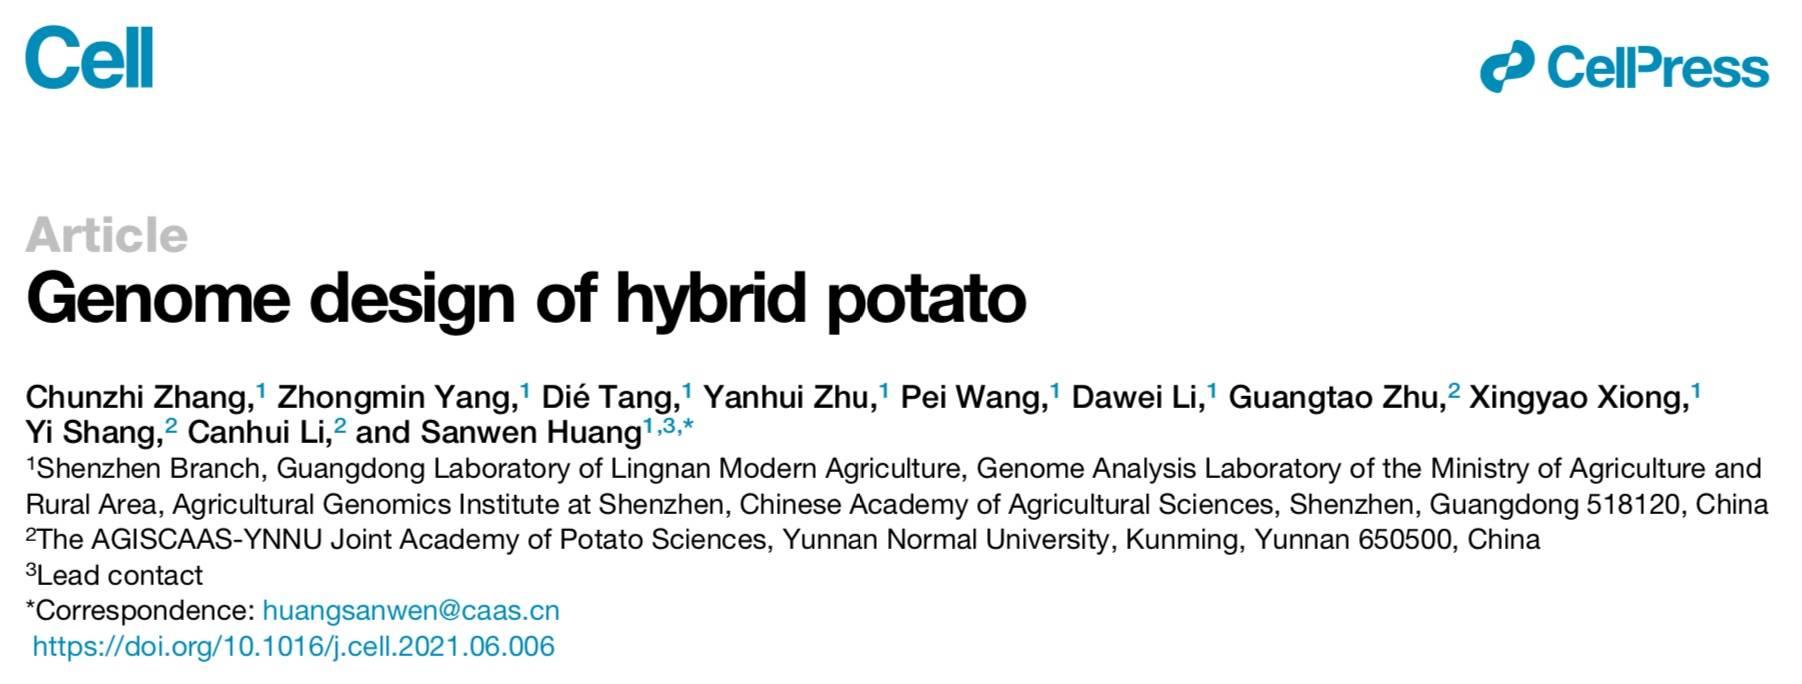 百年馬鈴薯品種替代多難？中國團隊驗證了雜交育種的可行性 